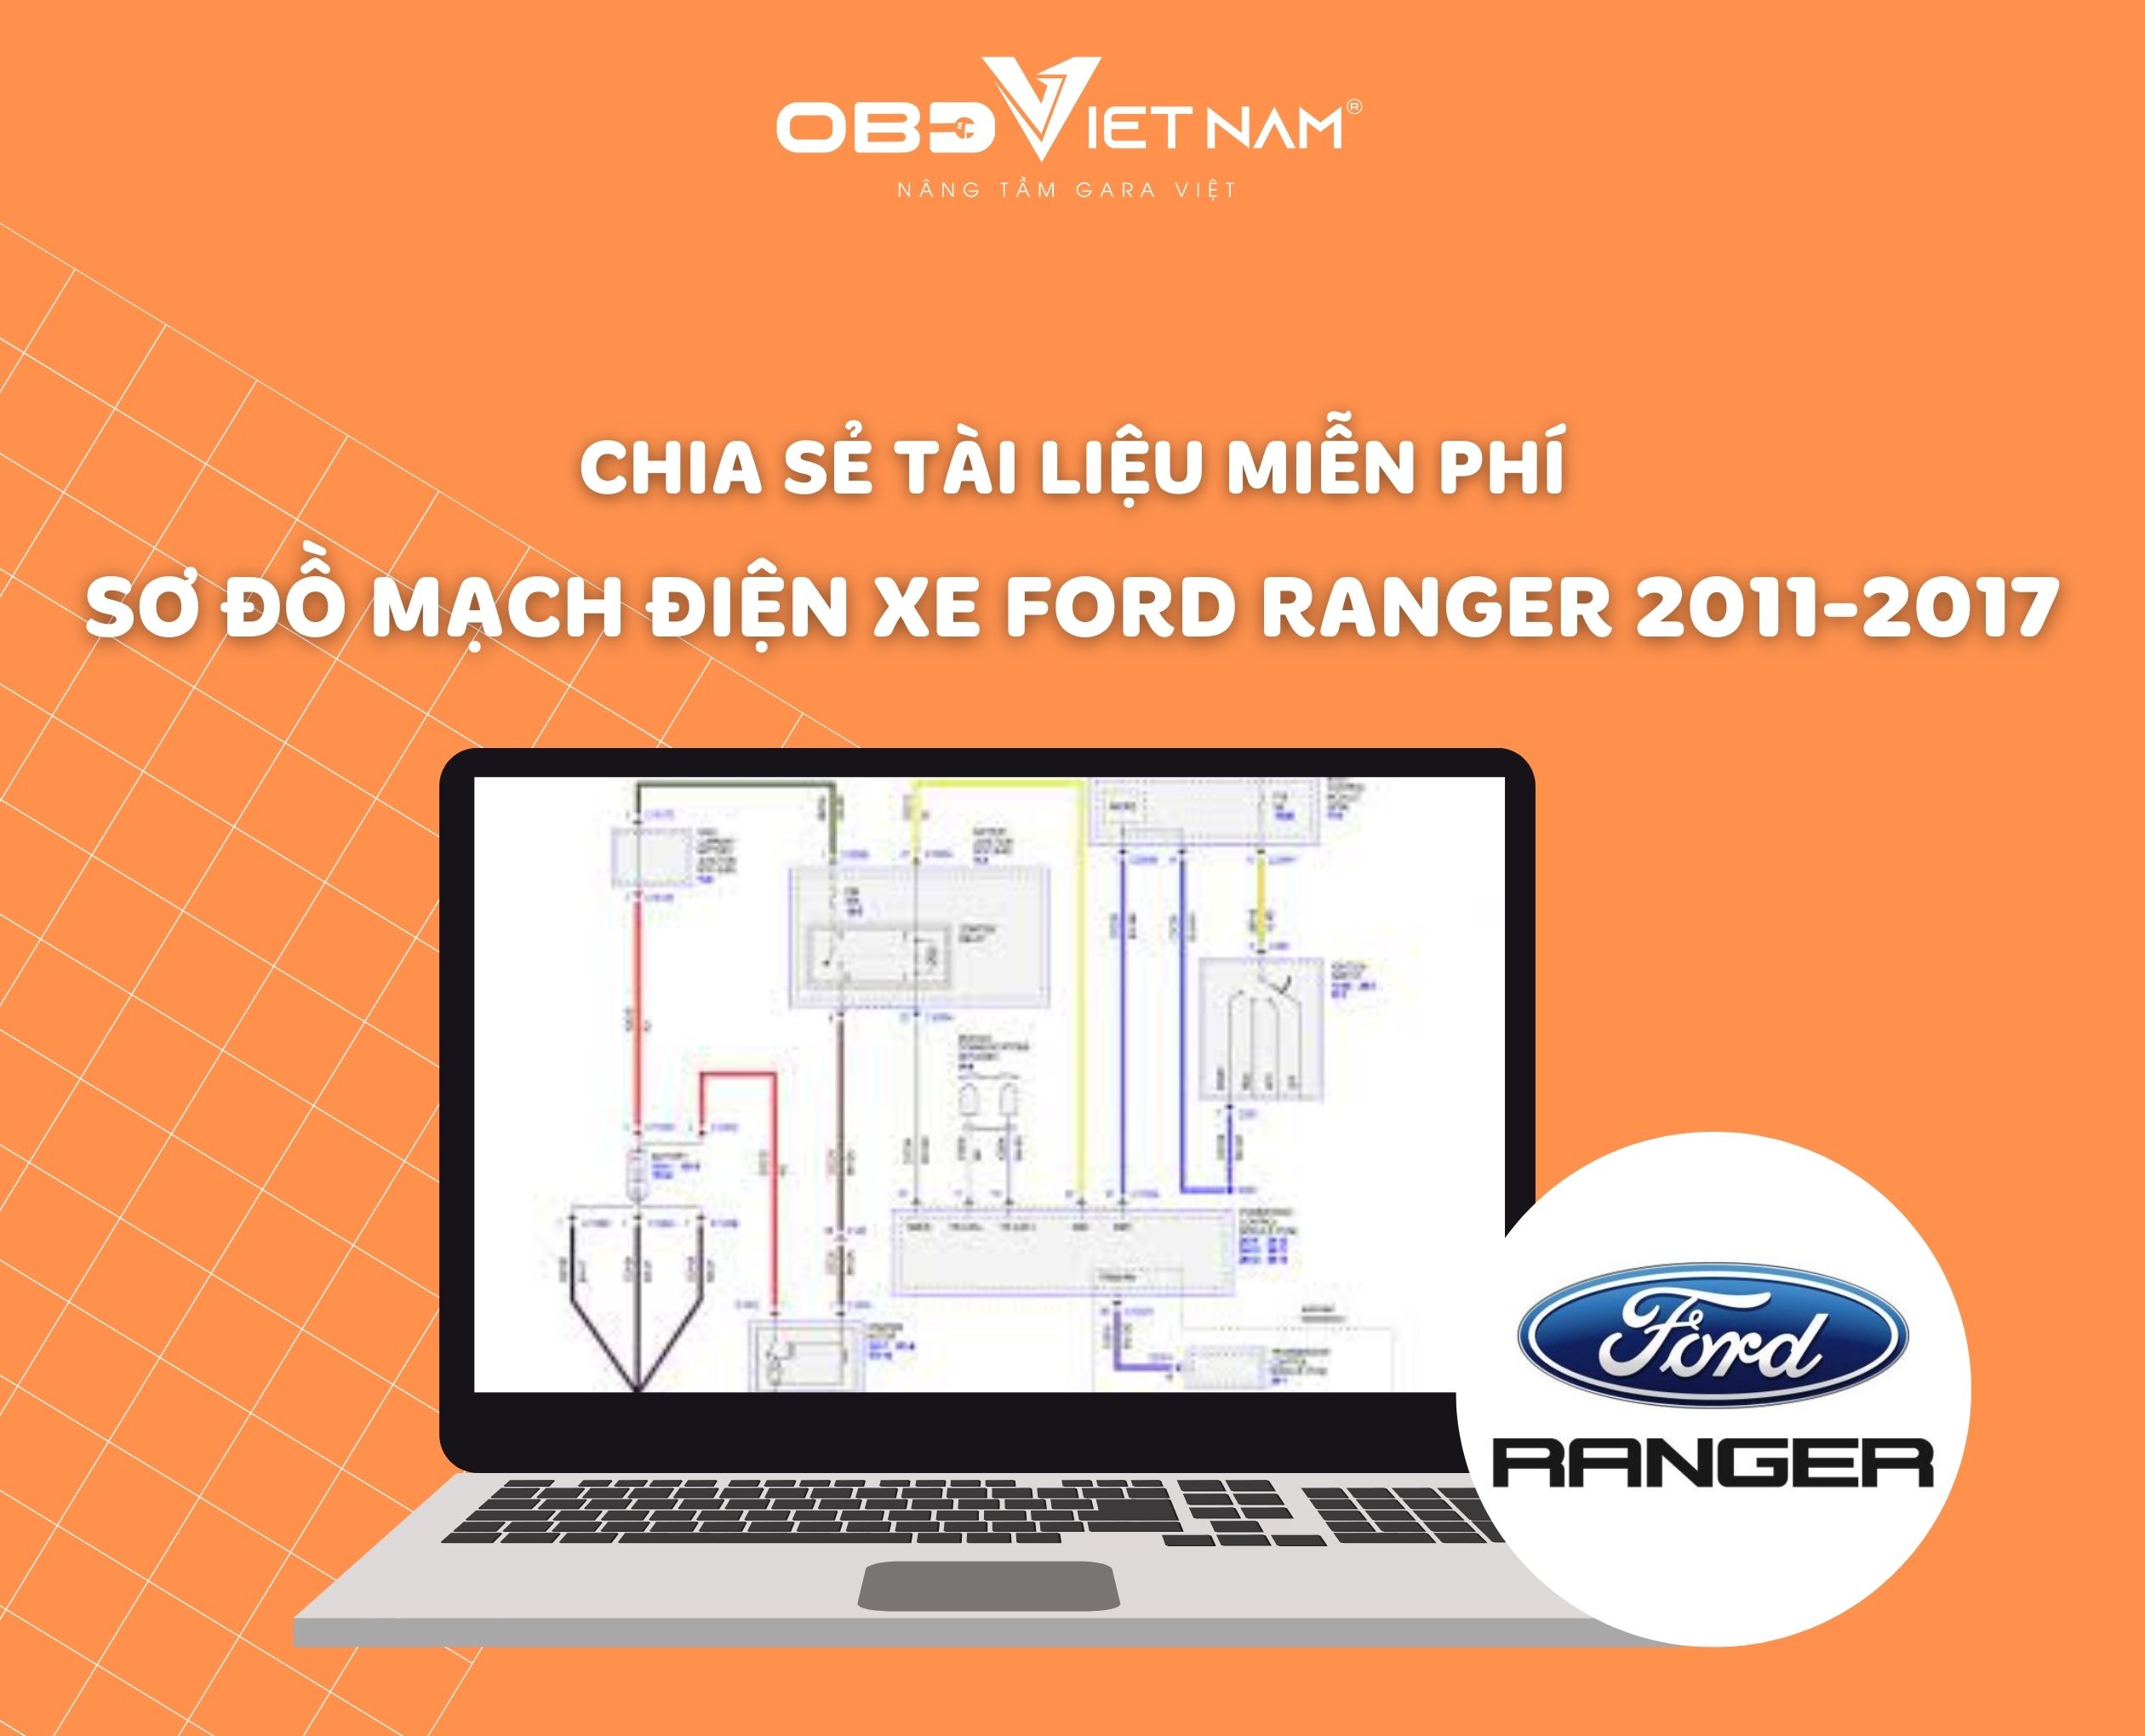 TÀI LIỆU ĐÀO TẠO SỬA CHỮA  Xe Ford Ranger Everes  Cộng đồng Kỹ thuật cơ  điện Việt Nam  Vietnam ME Technology Community